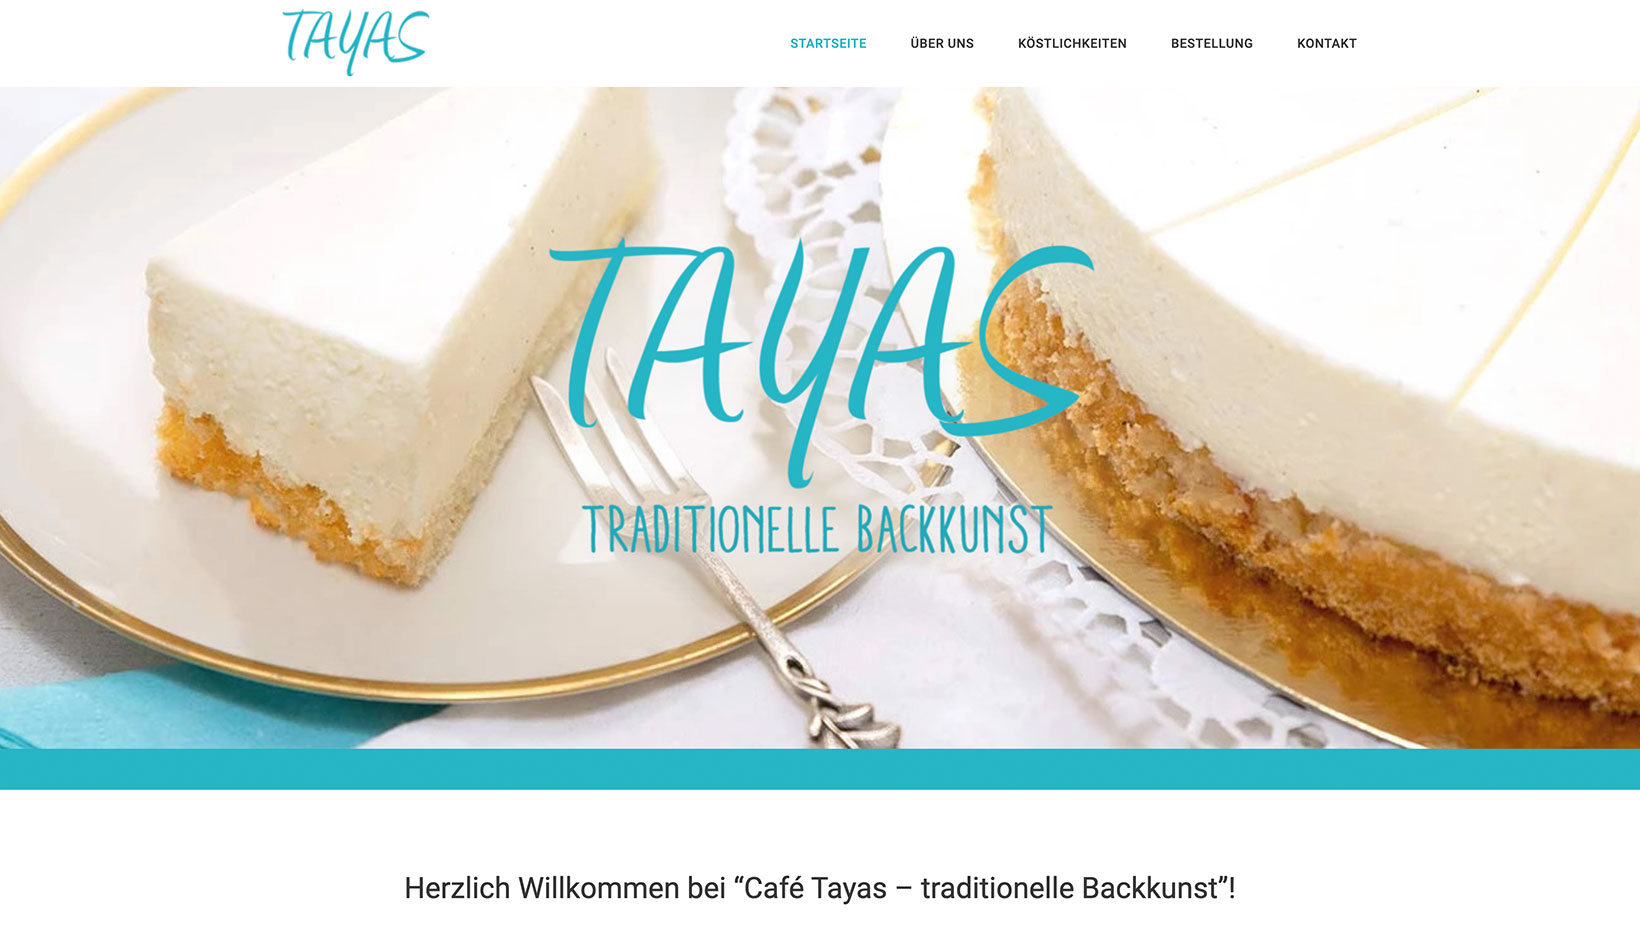 Referenz: Tayas, traditionelle Backkunst